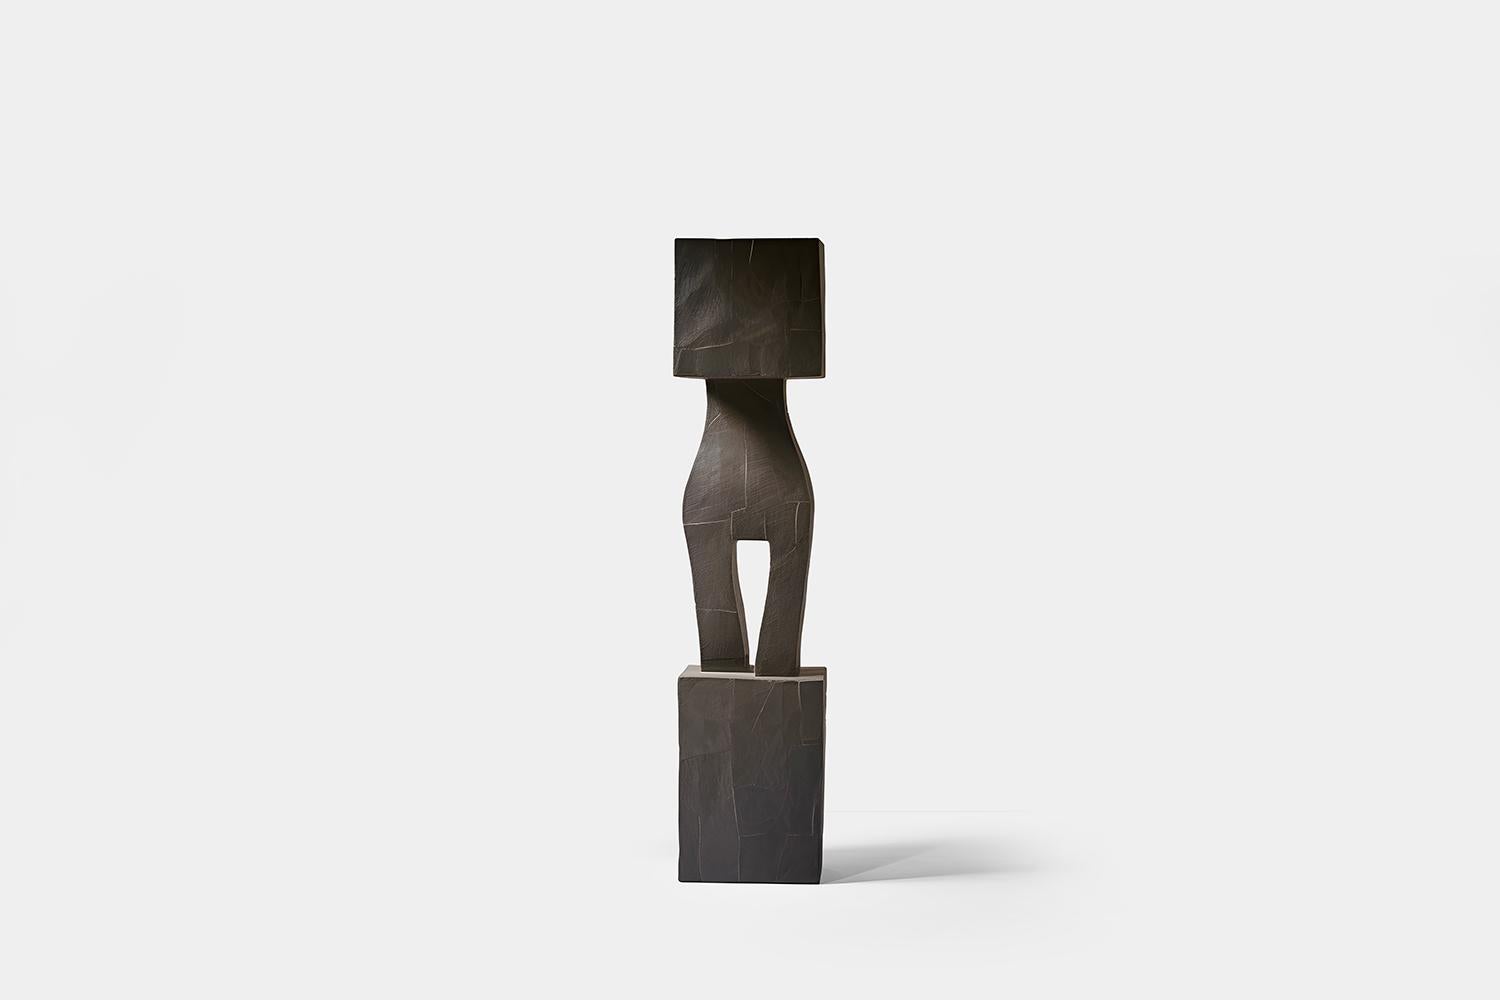 Sculpture monumentale en bois inspirée du style de Constantin Brancusi, Unseen Force 29 par Joel Escalona

Cette sculpture monolithique, conçue par l'artiste talentueux Joel Escalona, est un exemple impressionnant de la beauté de l'artisanat.